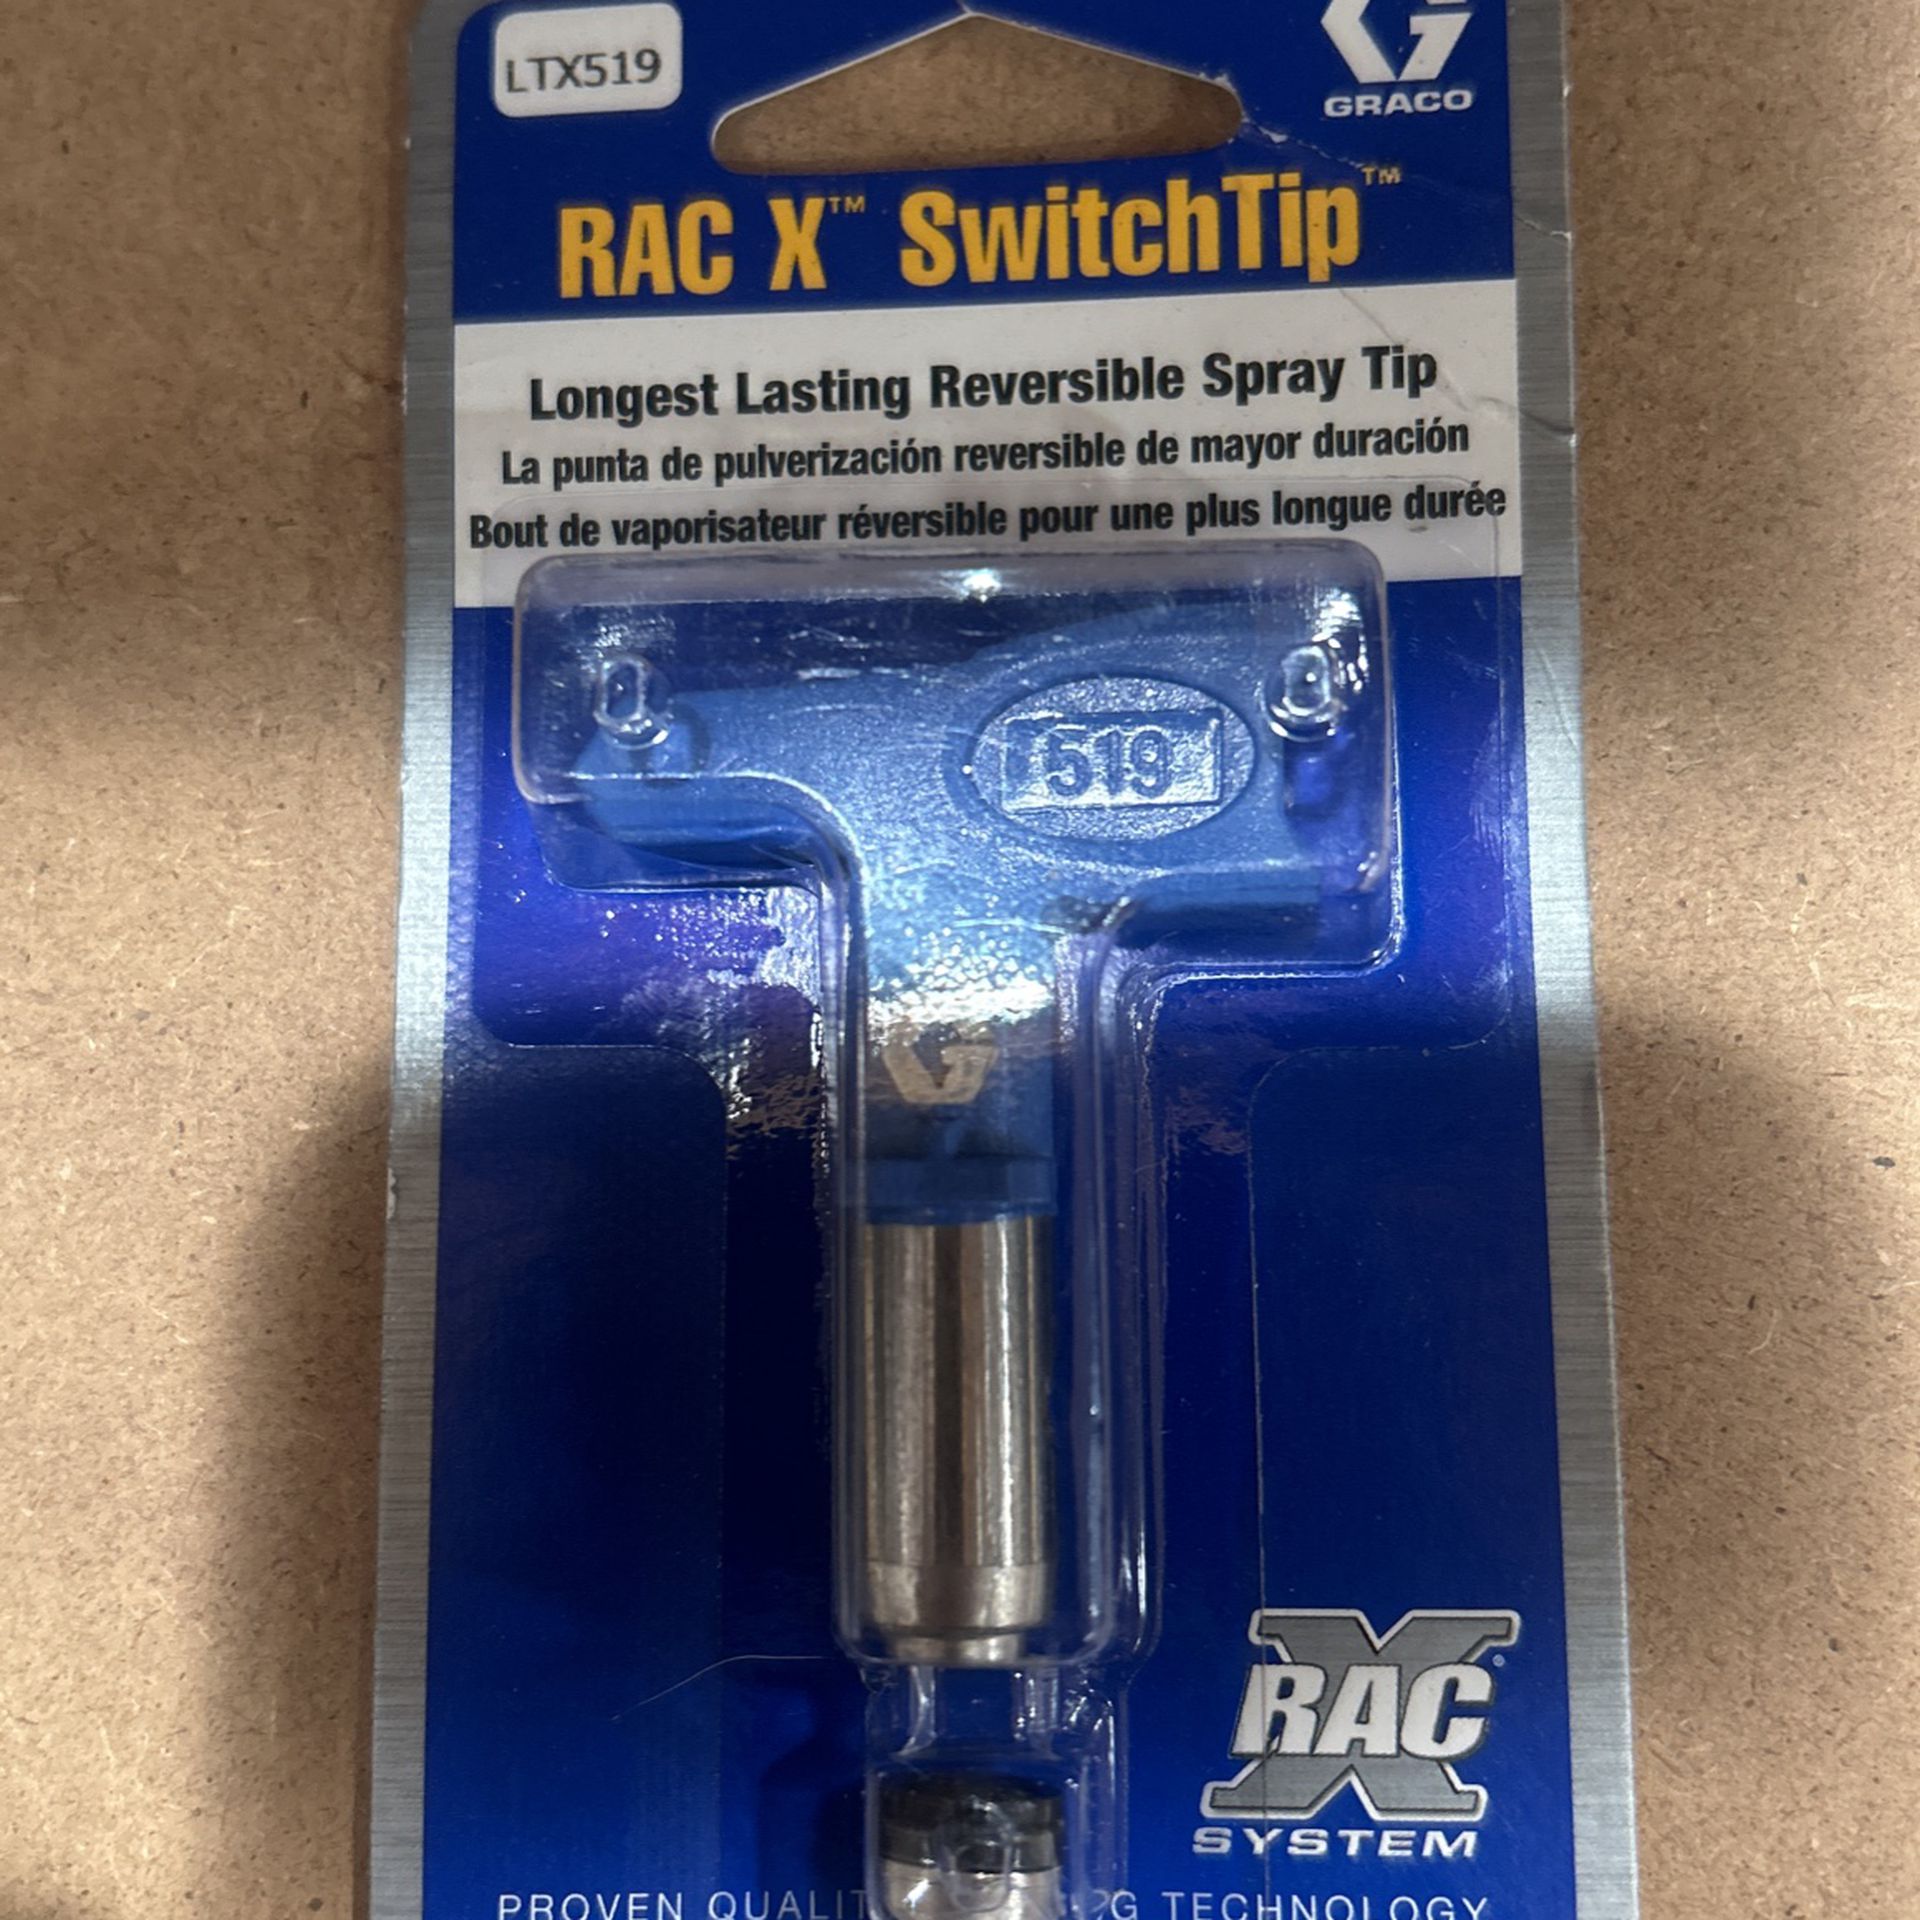 Graco RAC X SwitchTip 519 